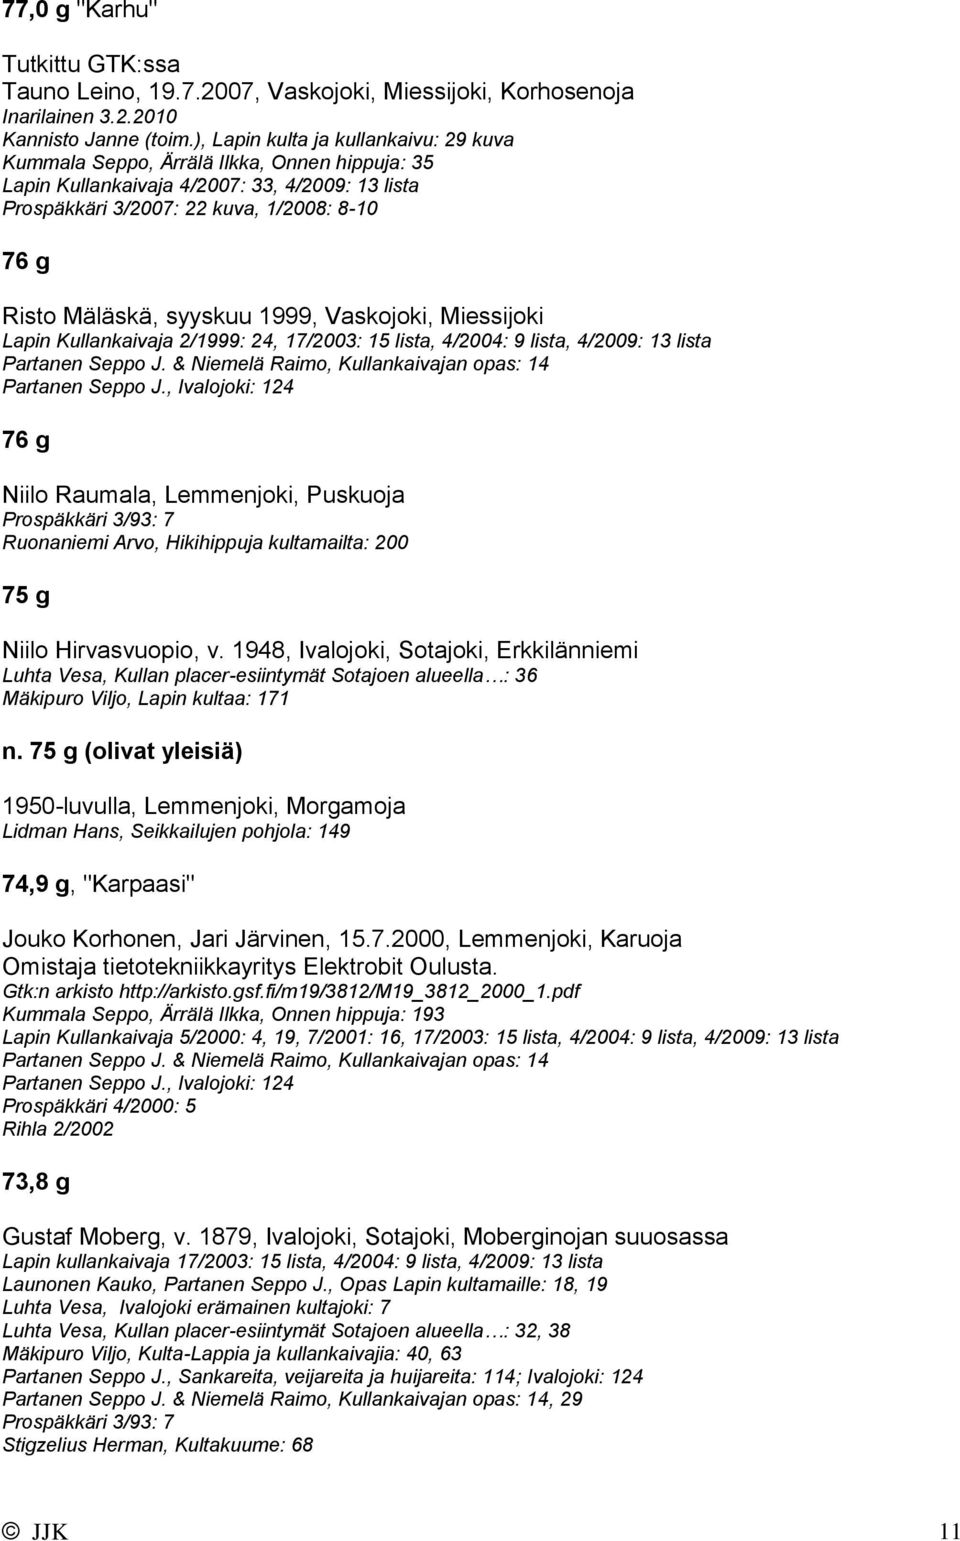 syyskuu 1999, Vaskojoki, Miessijoki Lapin Kullankaivaja 2/1999: 24, 17/2003: 15 lista, 4/2004: 9 lista, 4/2009: 13 lista Partanen Seppo J. & Niemelä Raimo, Kullankaivajan opas: 14 Partanen Seppo J.